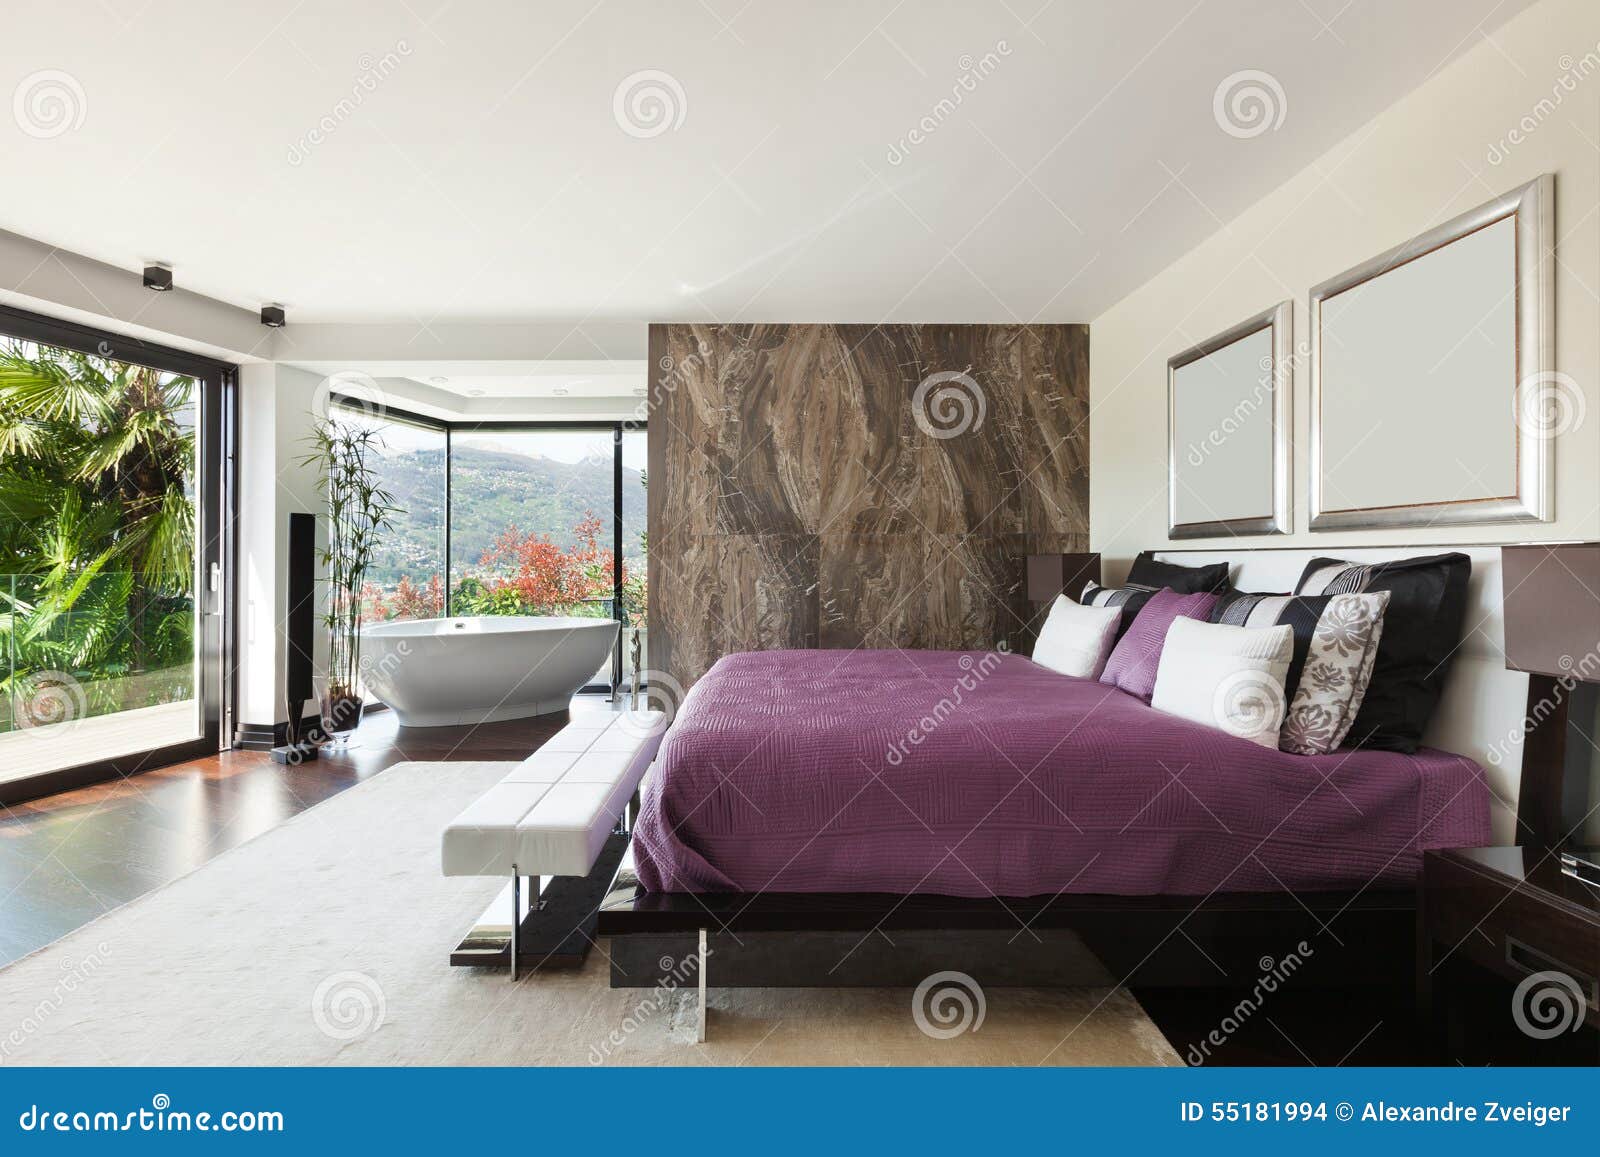 interiors, luxury bedroom